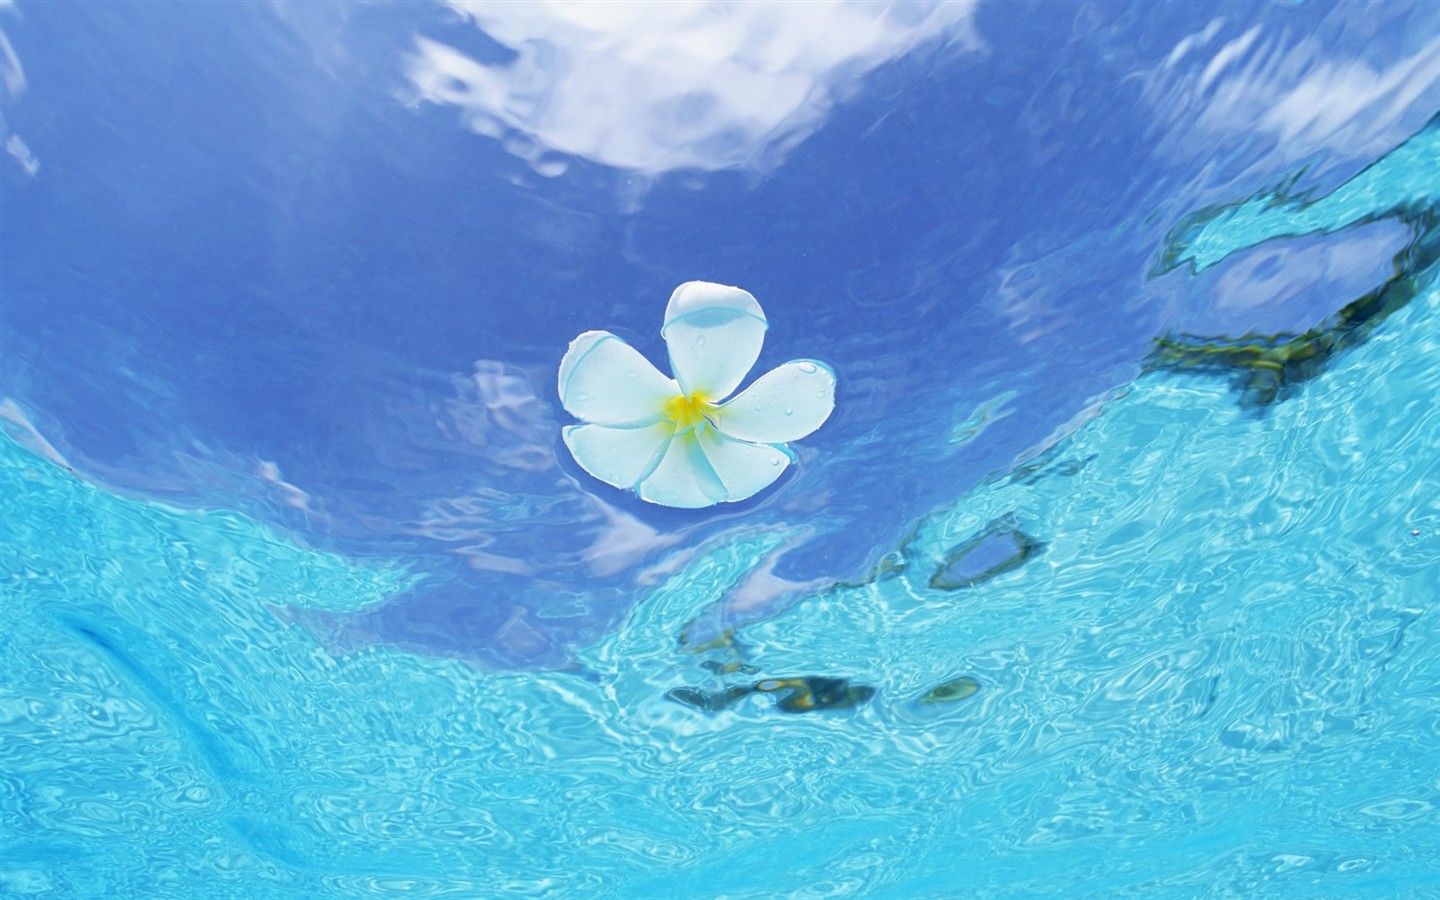 モルディブの水と青空 #12 - 1440x900